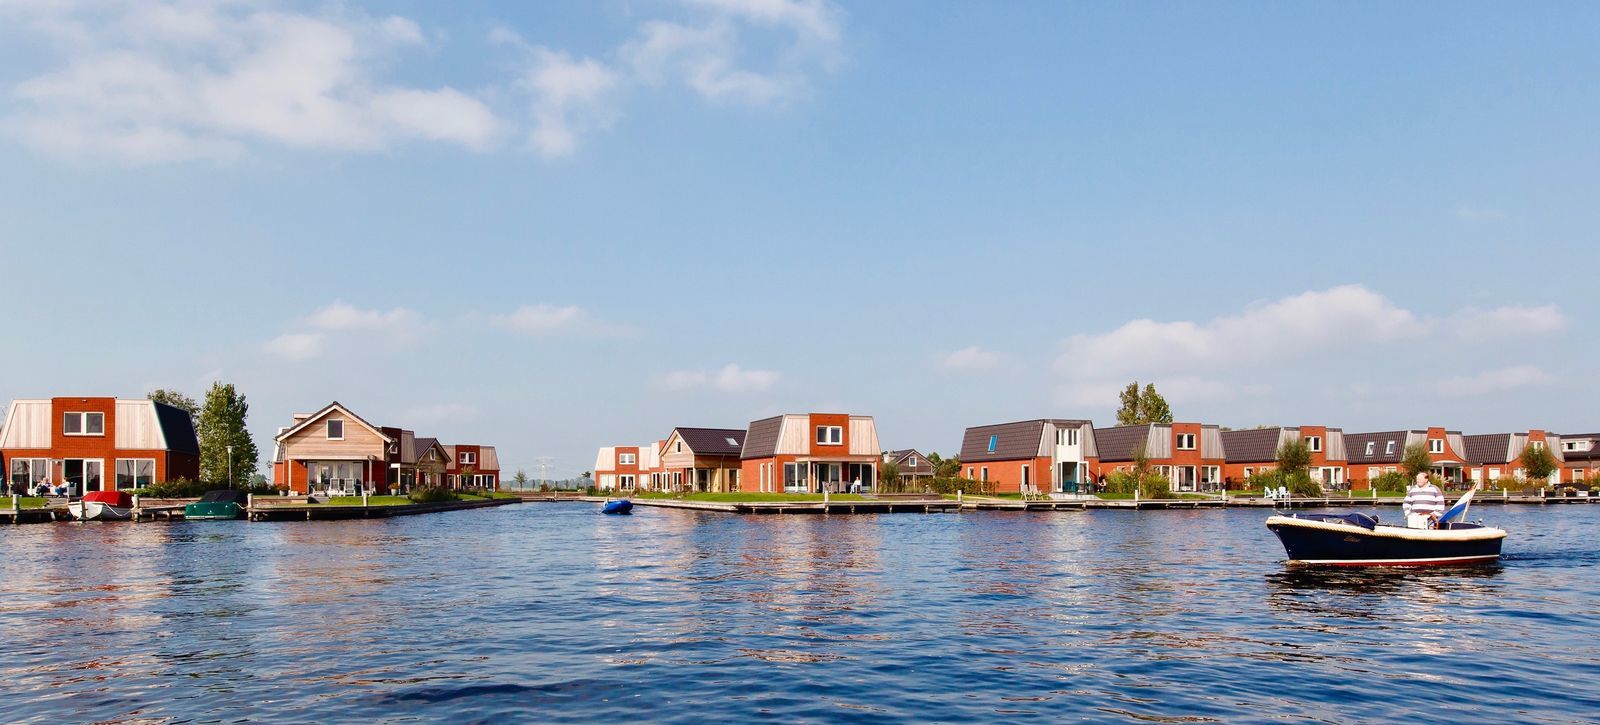 vakantiewoning Friesland water